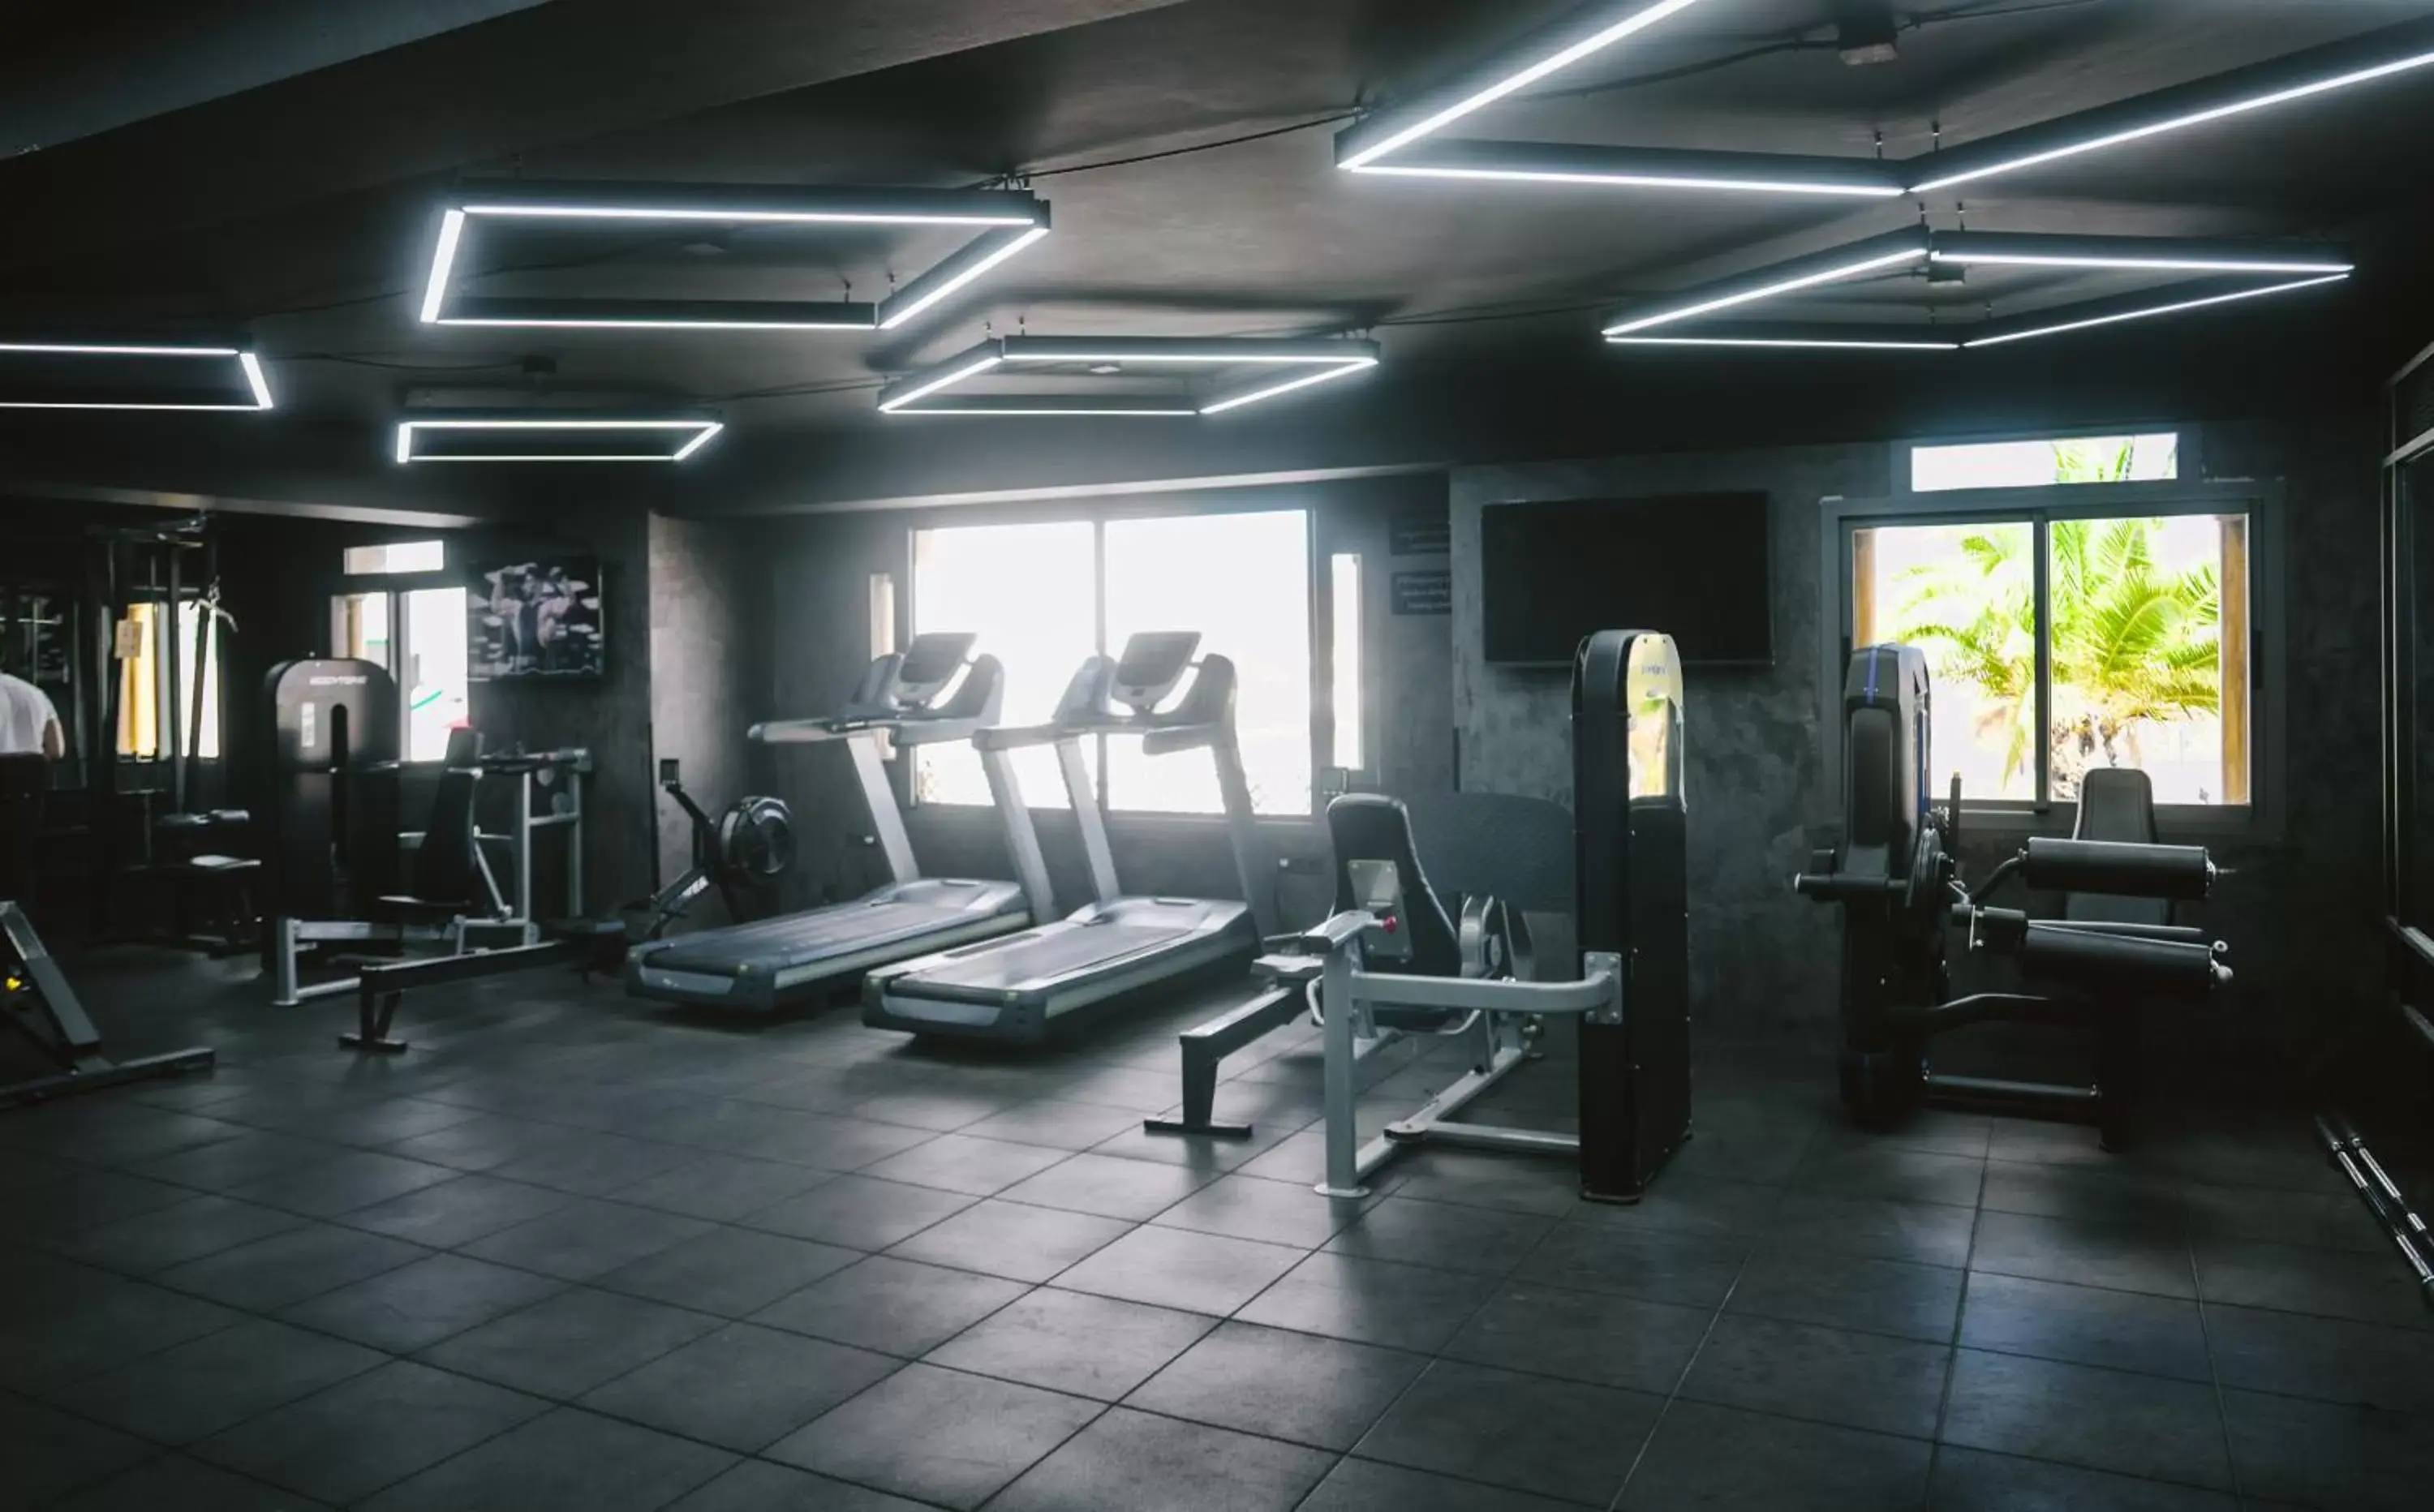 Fitness centre/facilities, Fitness Center/Facilities in Hotel Argana Agadir